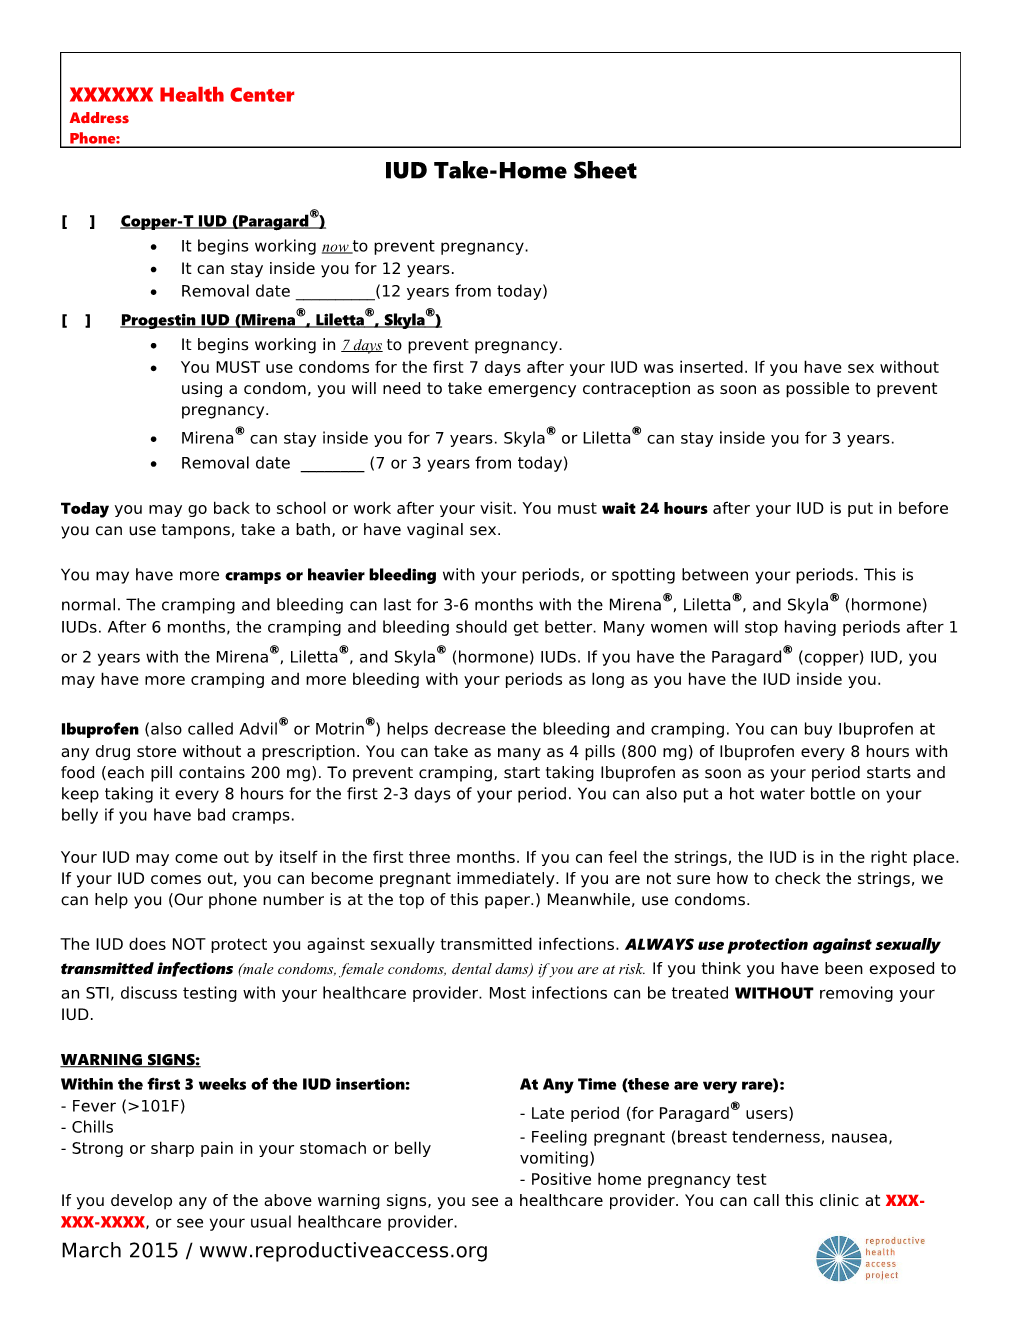 IUD Take-Home Sheet